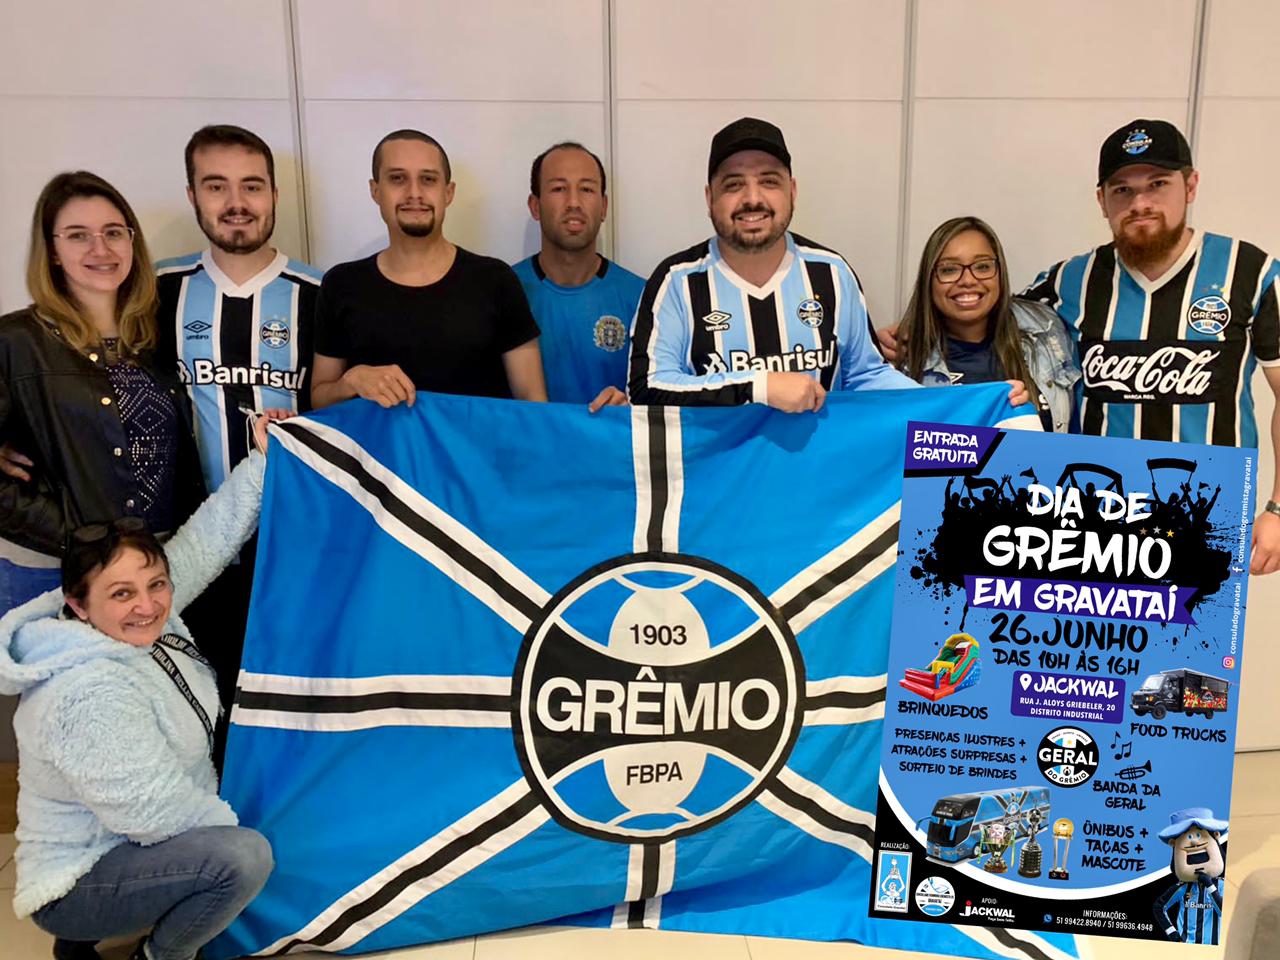 Marque na agenda: 26 de junho será o Dia de Grêmio em Gravataí